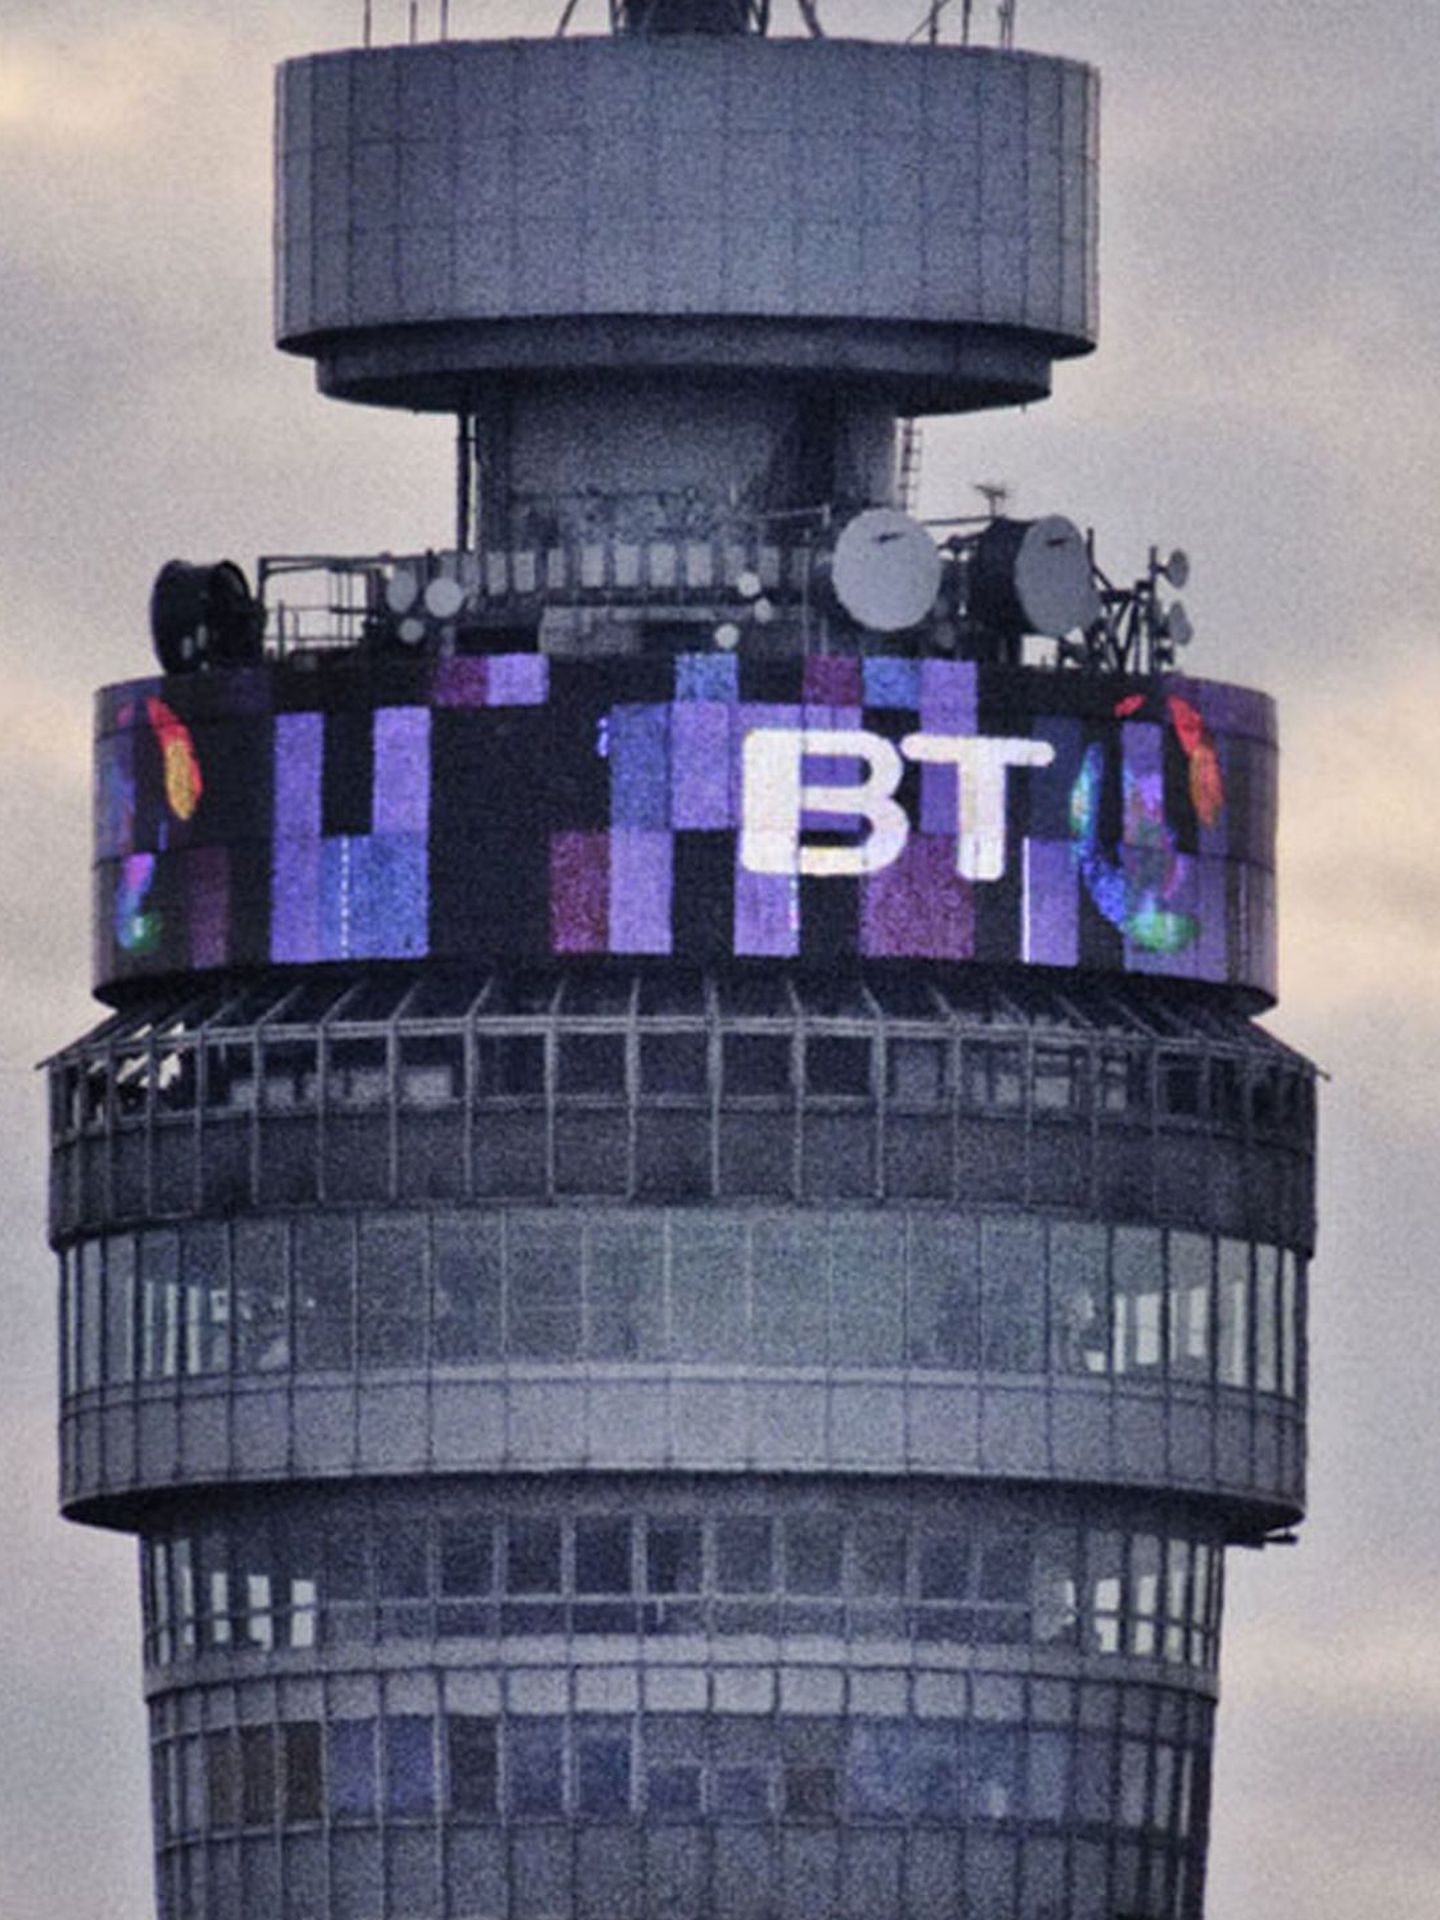 Torre de British Telecom.